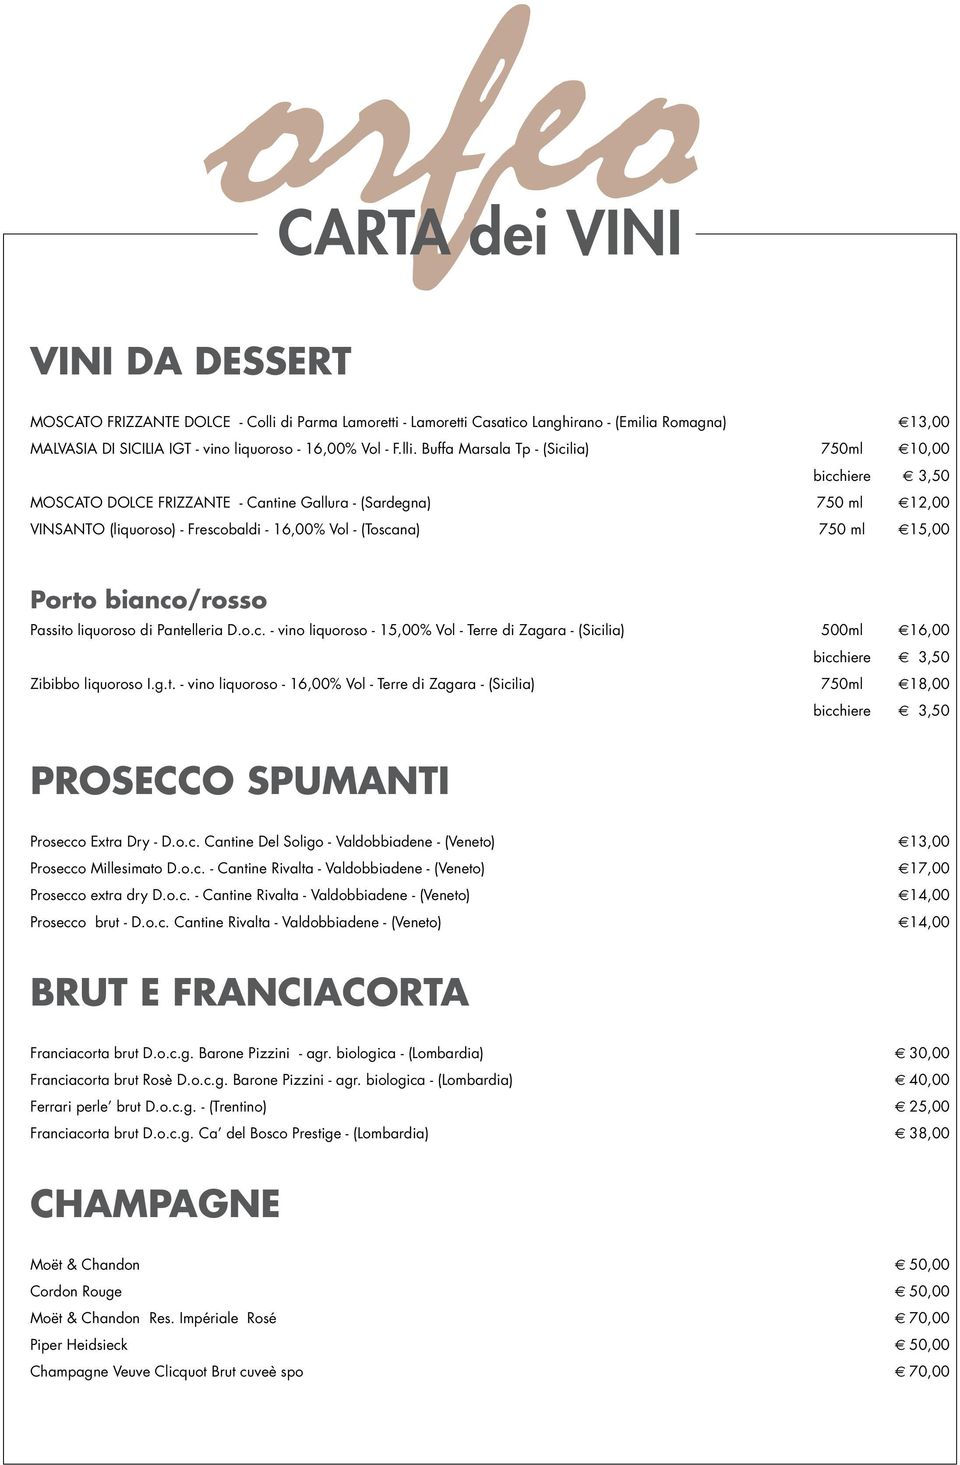 Buffa Marsala Tp - (Sicilia) 750ml 10,00 bicchiere 3,50 Moscato dolce frizzante - Cantine Gallura - (Sardegna) 750 ml 12,00 VINSANTO (liquoroso) - Frescobaldi - 16,00% Vol - (Toscana) 750 ml 15,00